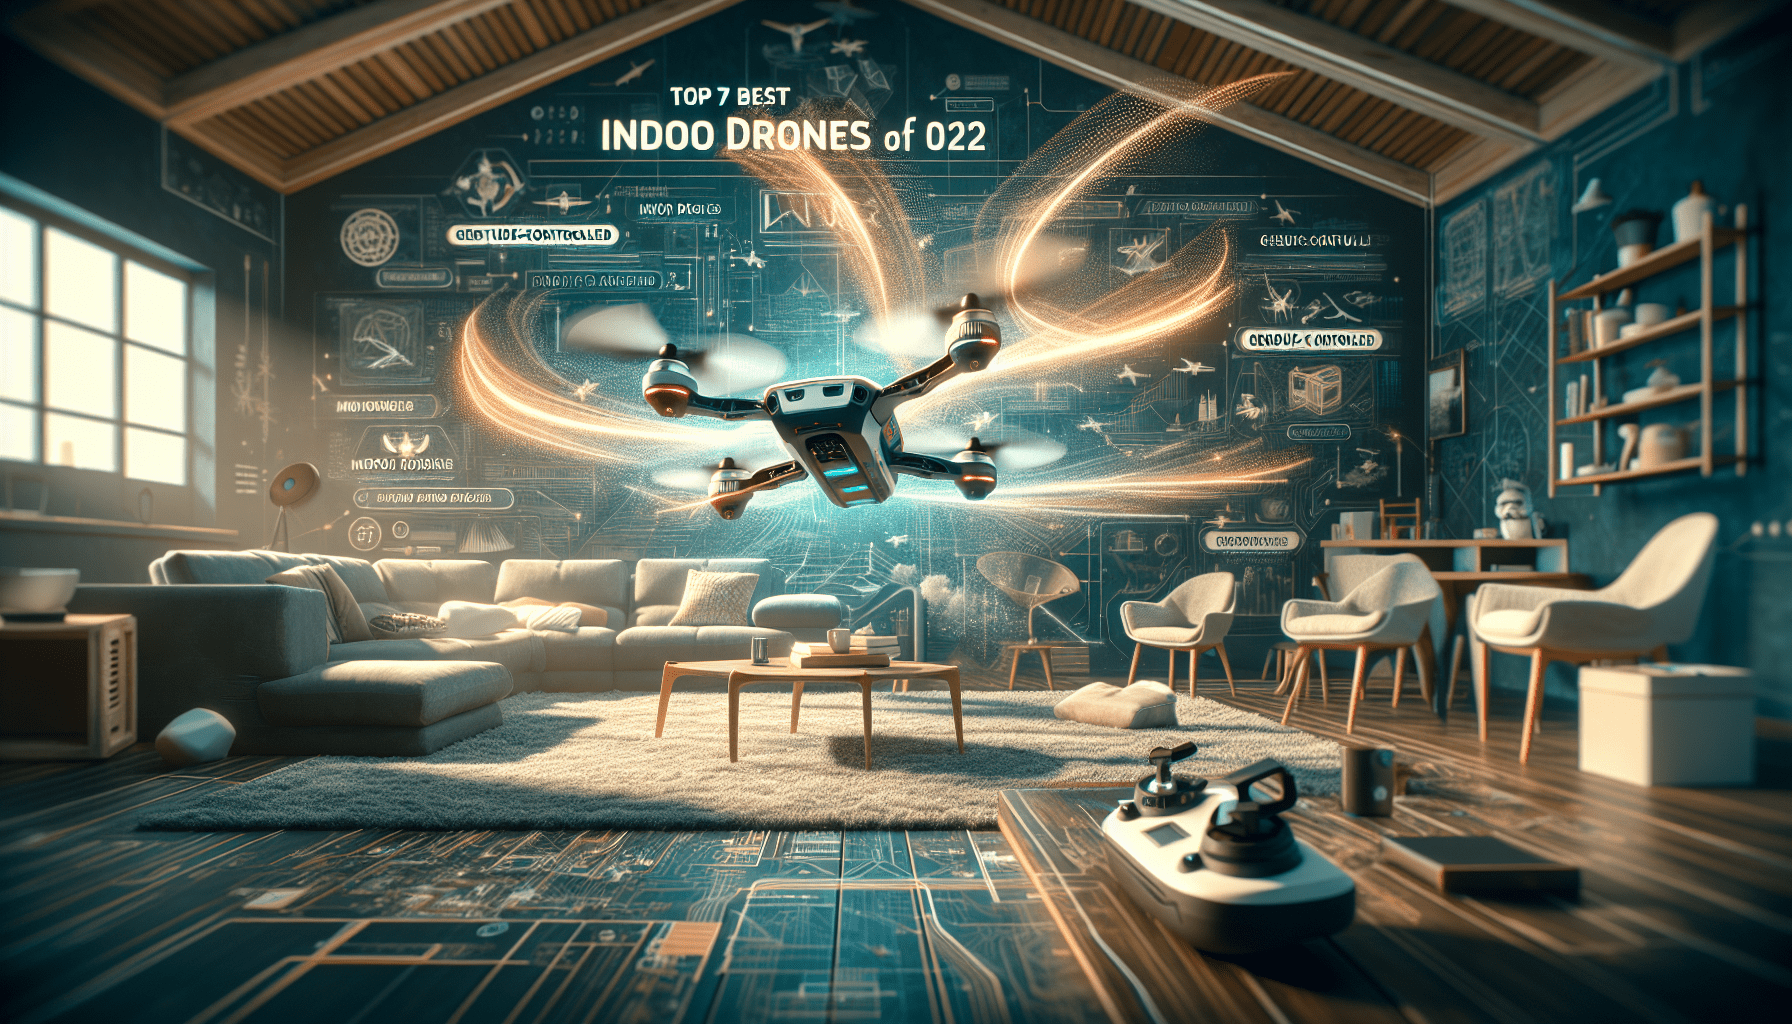 Top 7 Best Indoor Drones for 2022 Review